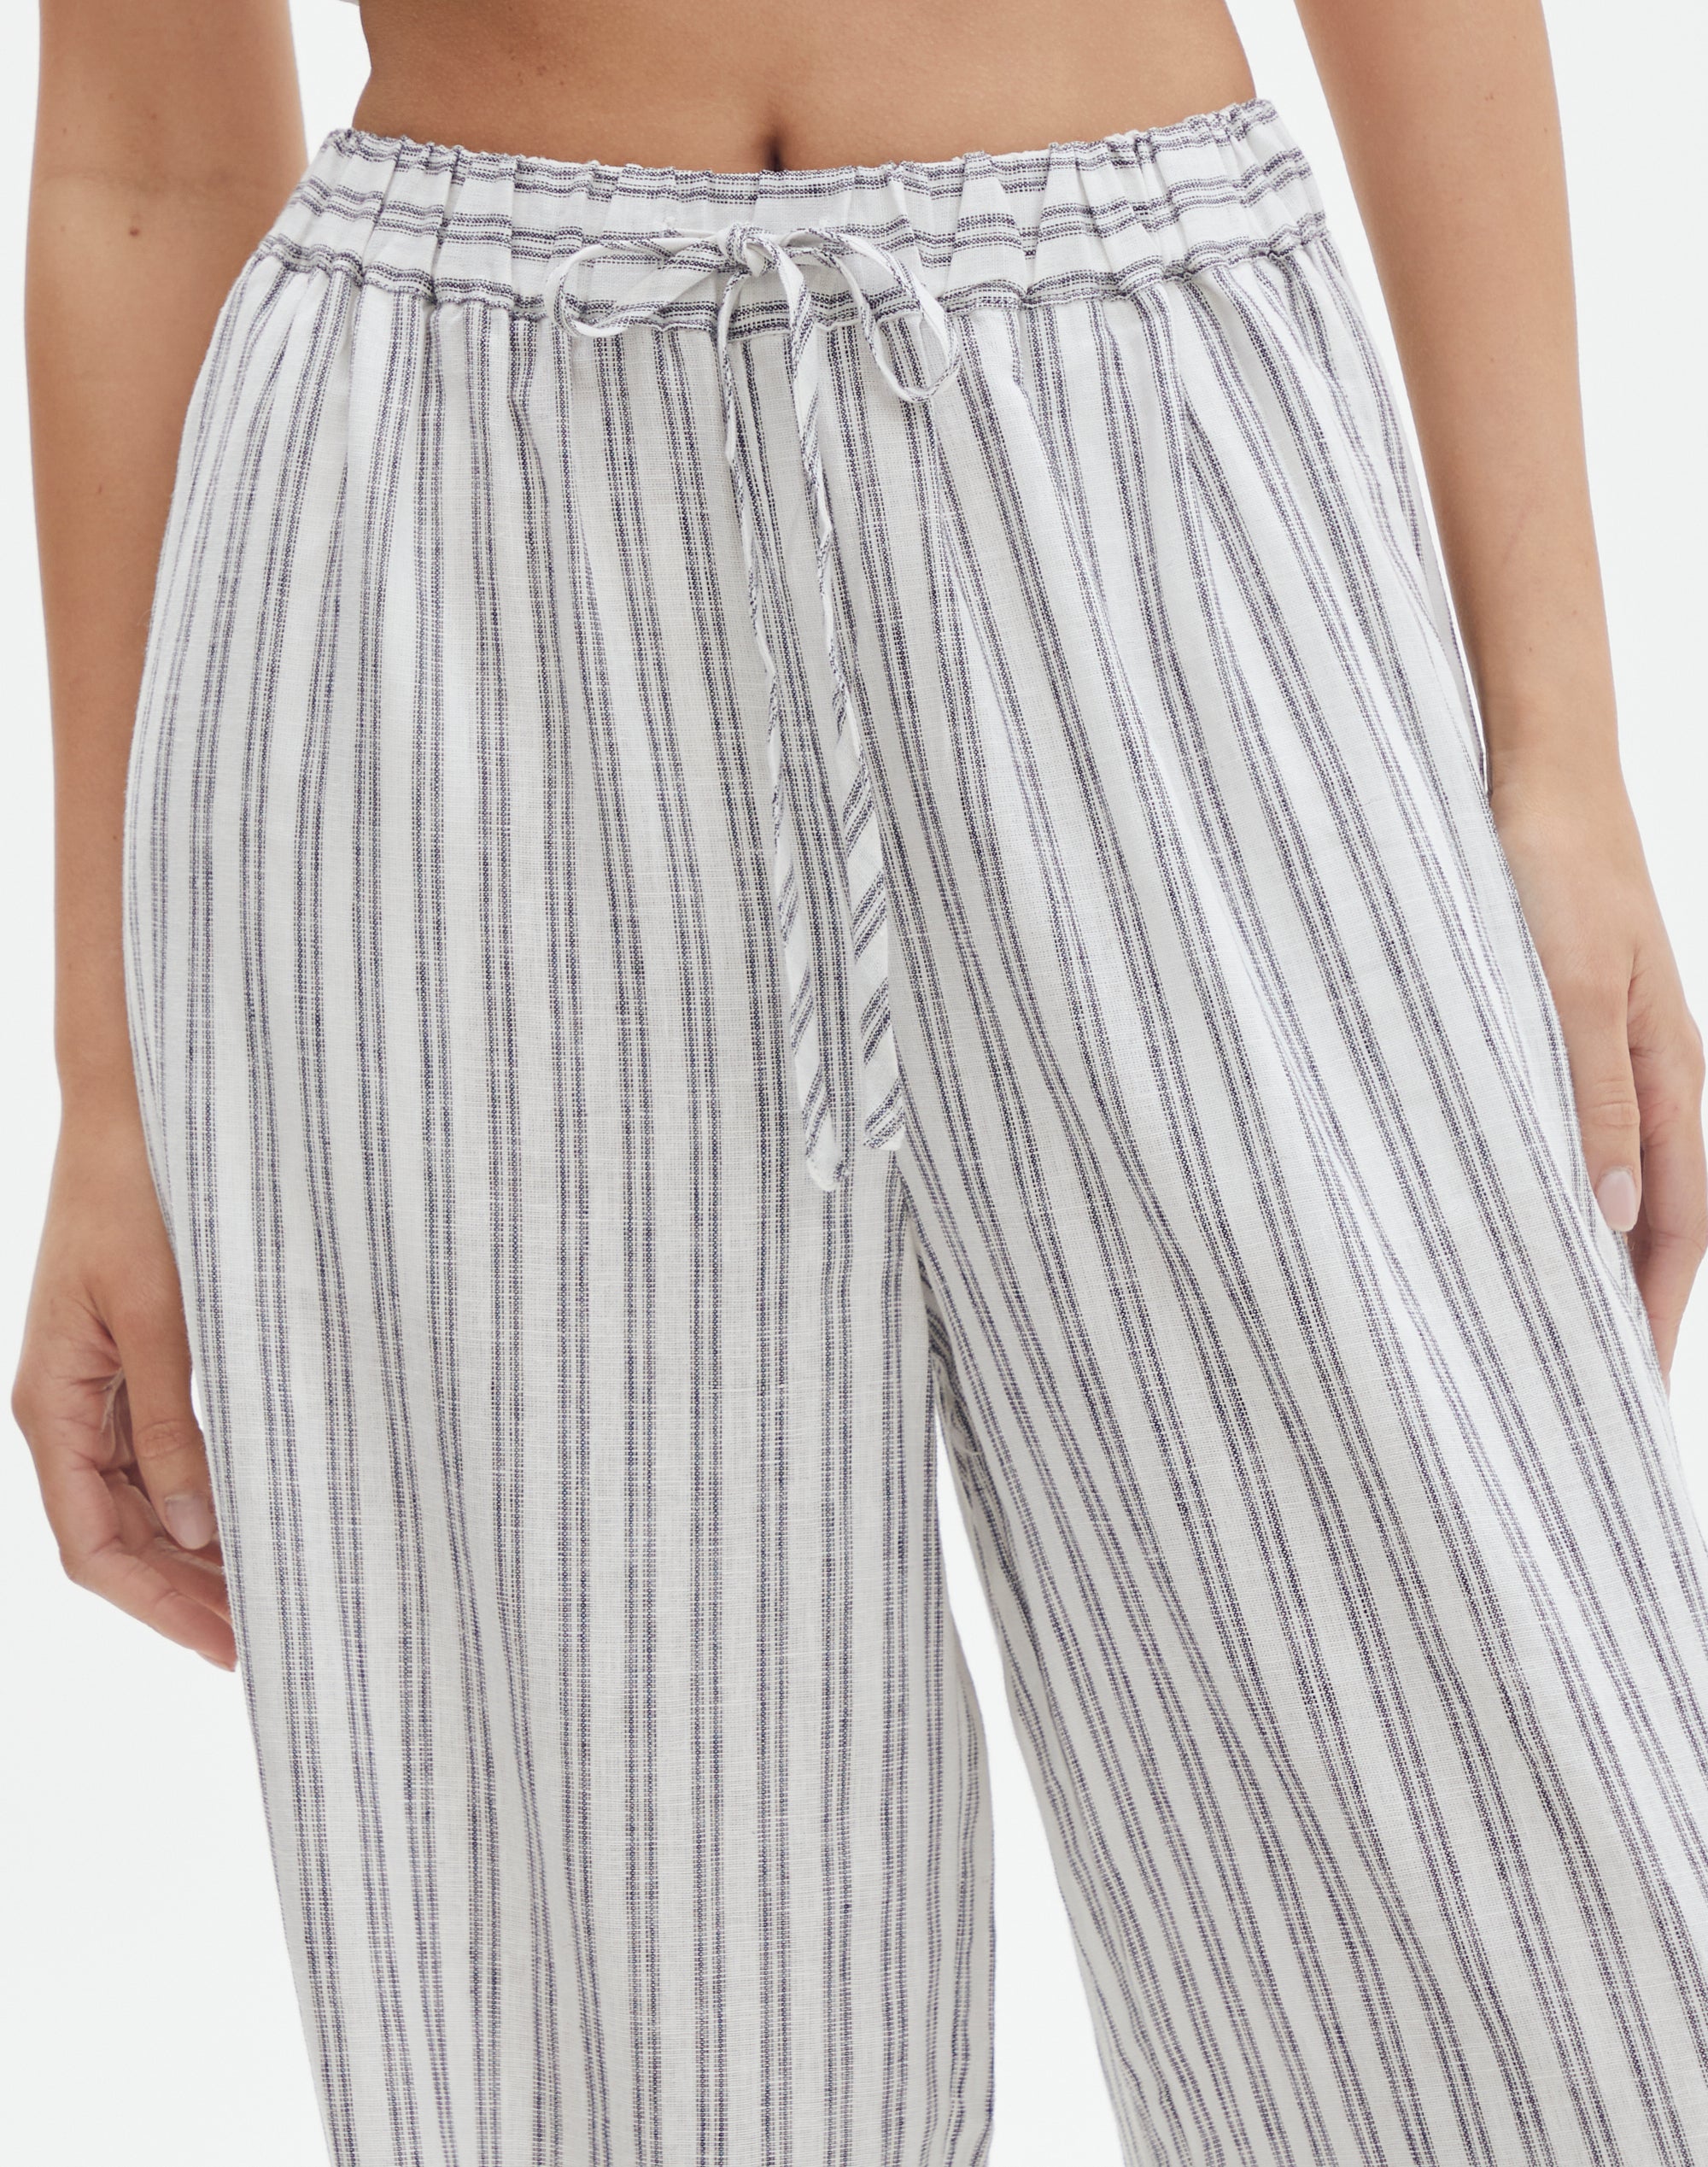 Dekker Linen Pants in Black/White Stripe